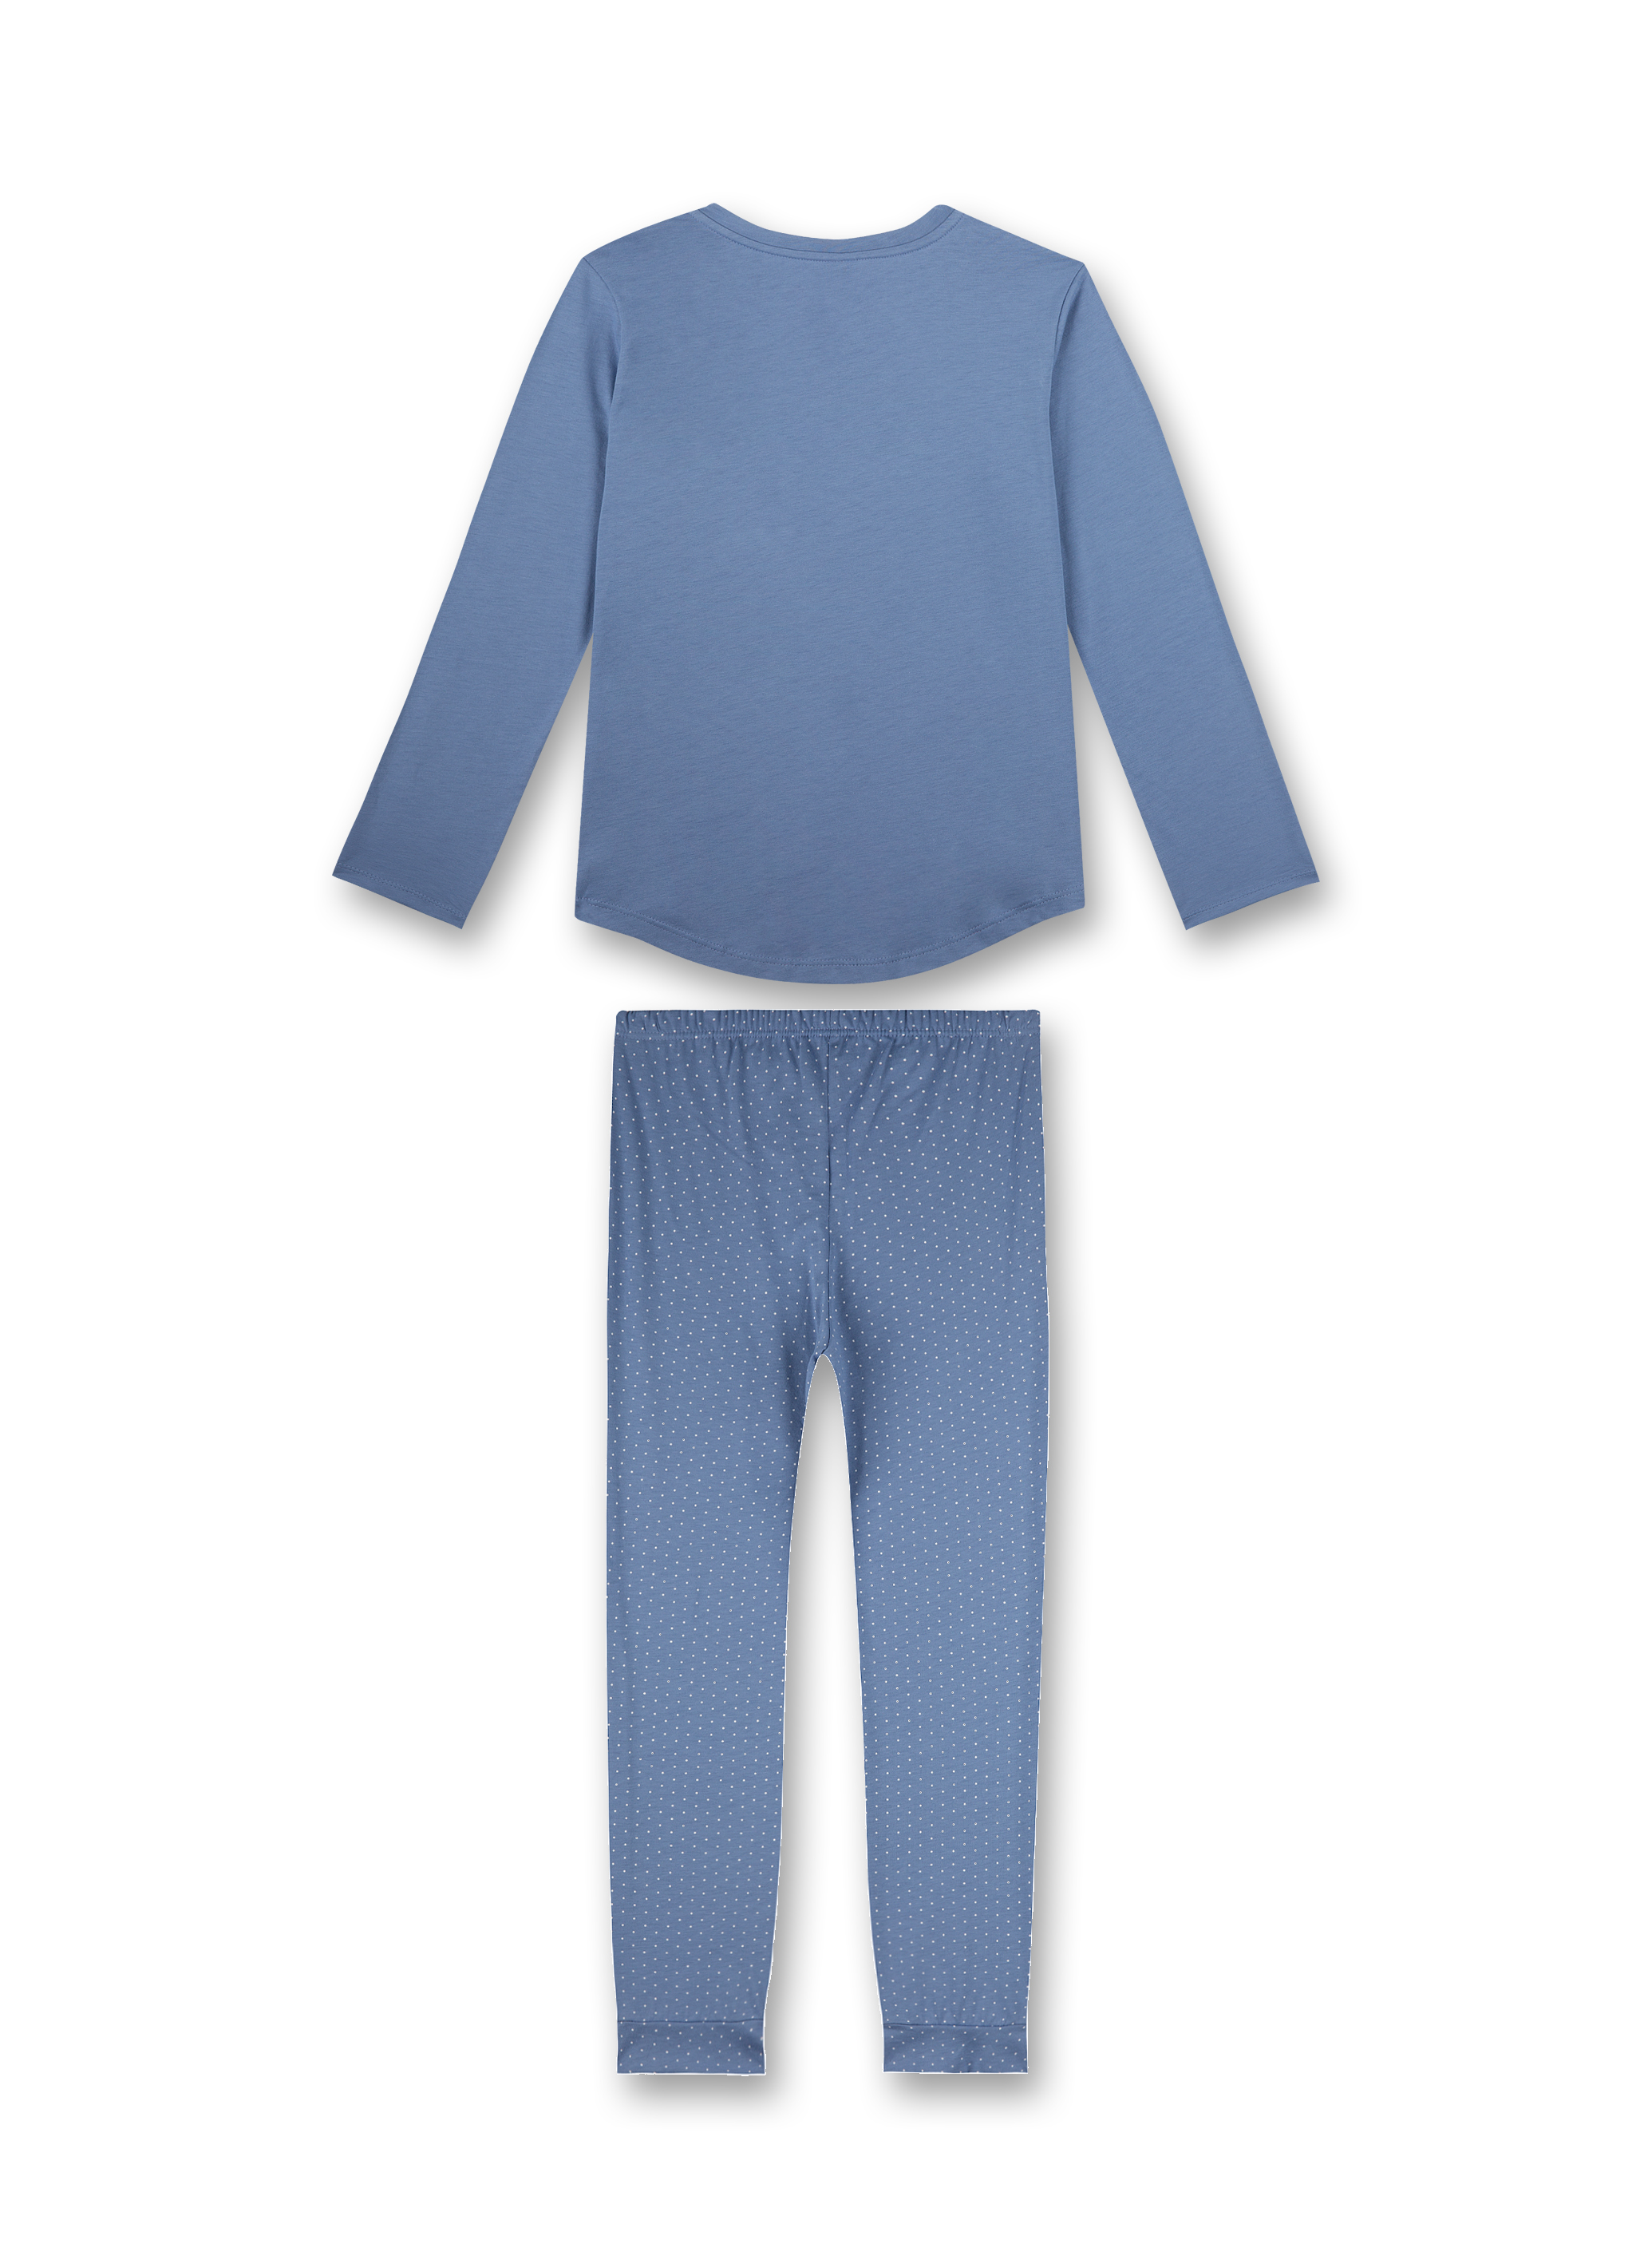 Mädchen-Schlafanzug Blau